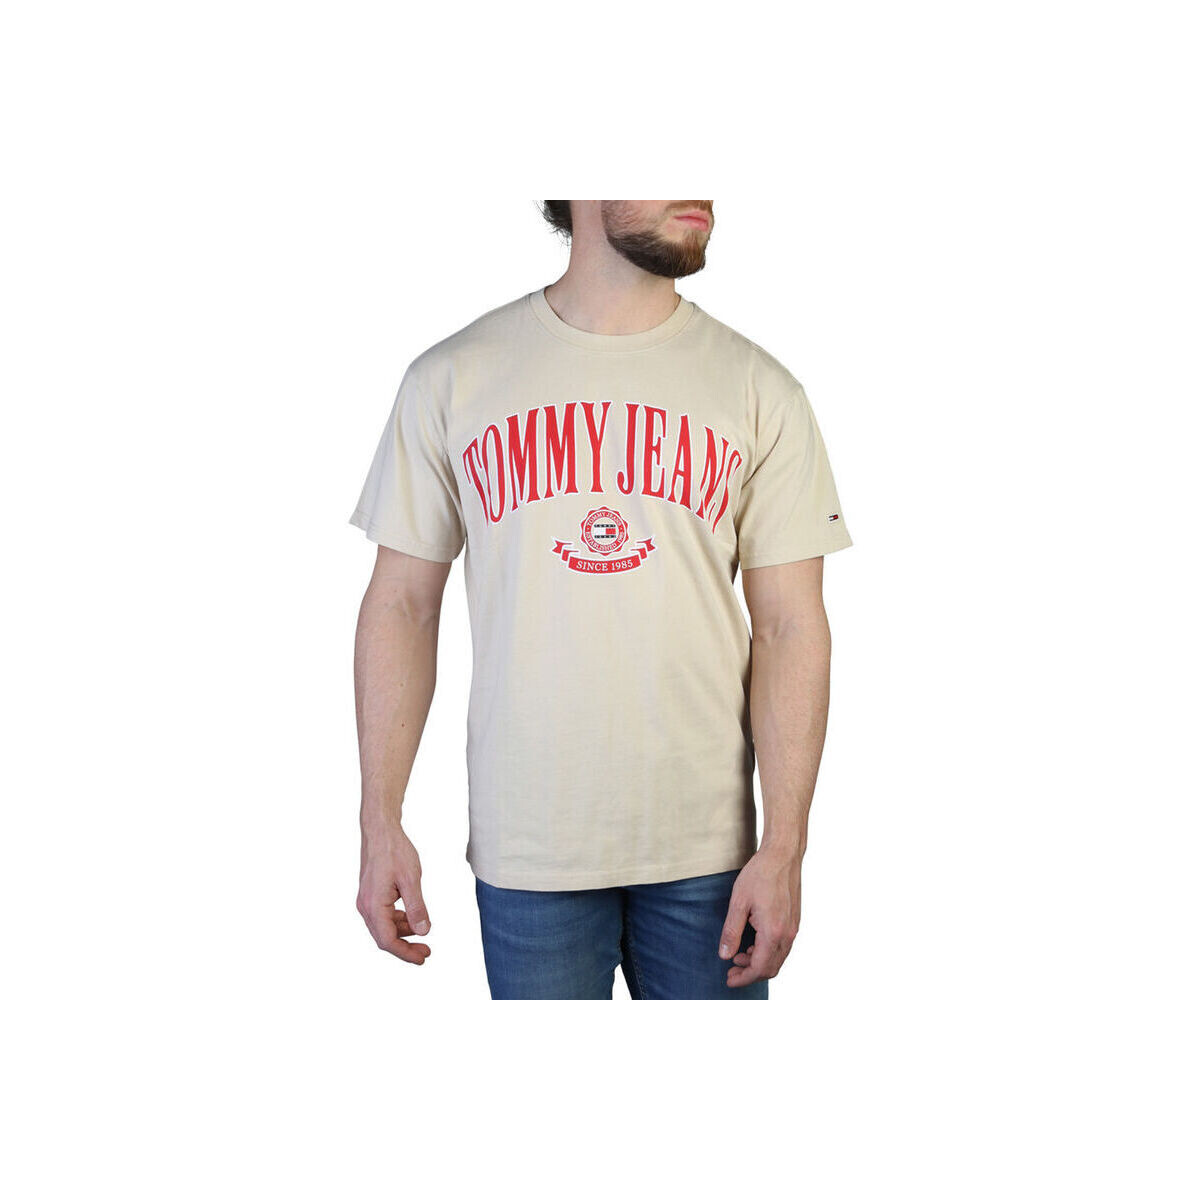 tekstylia Męskie T-shirty z krótkim rękawem Tommy Hilfiger - dm0dm16400 Brązowy